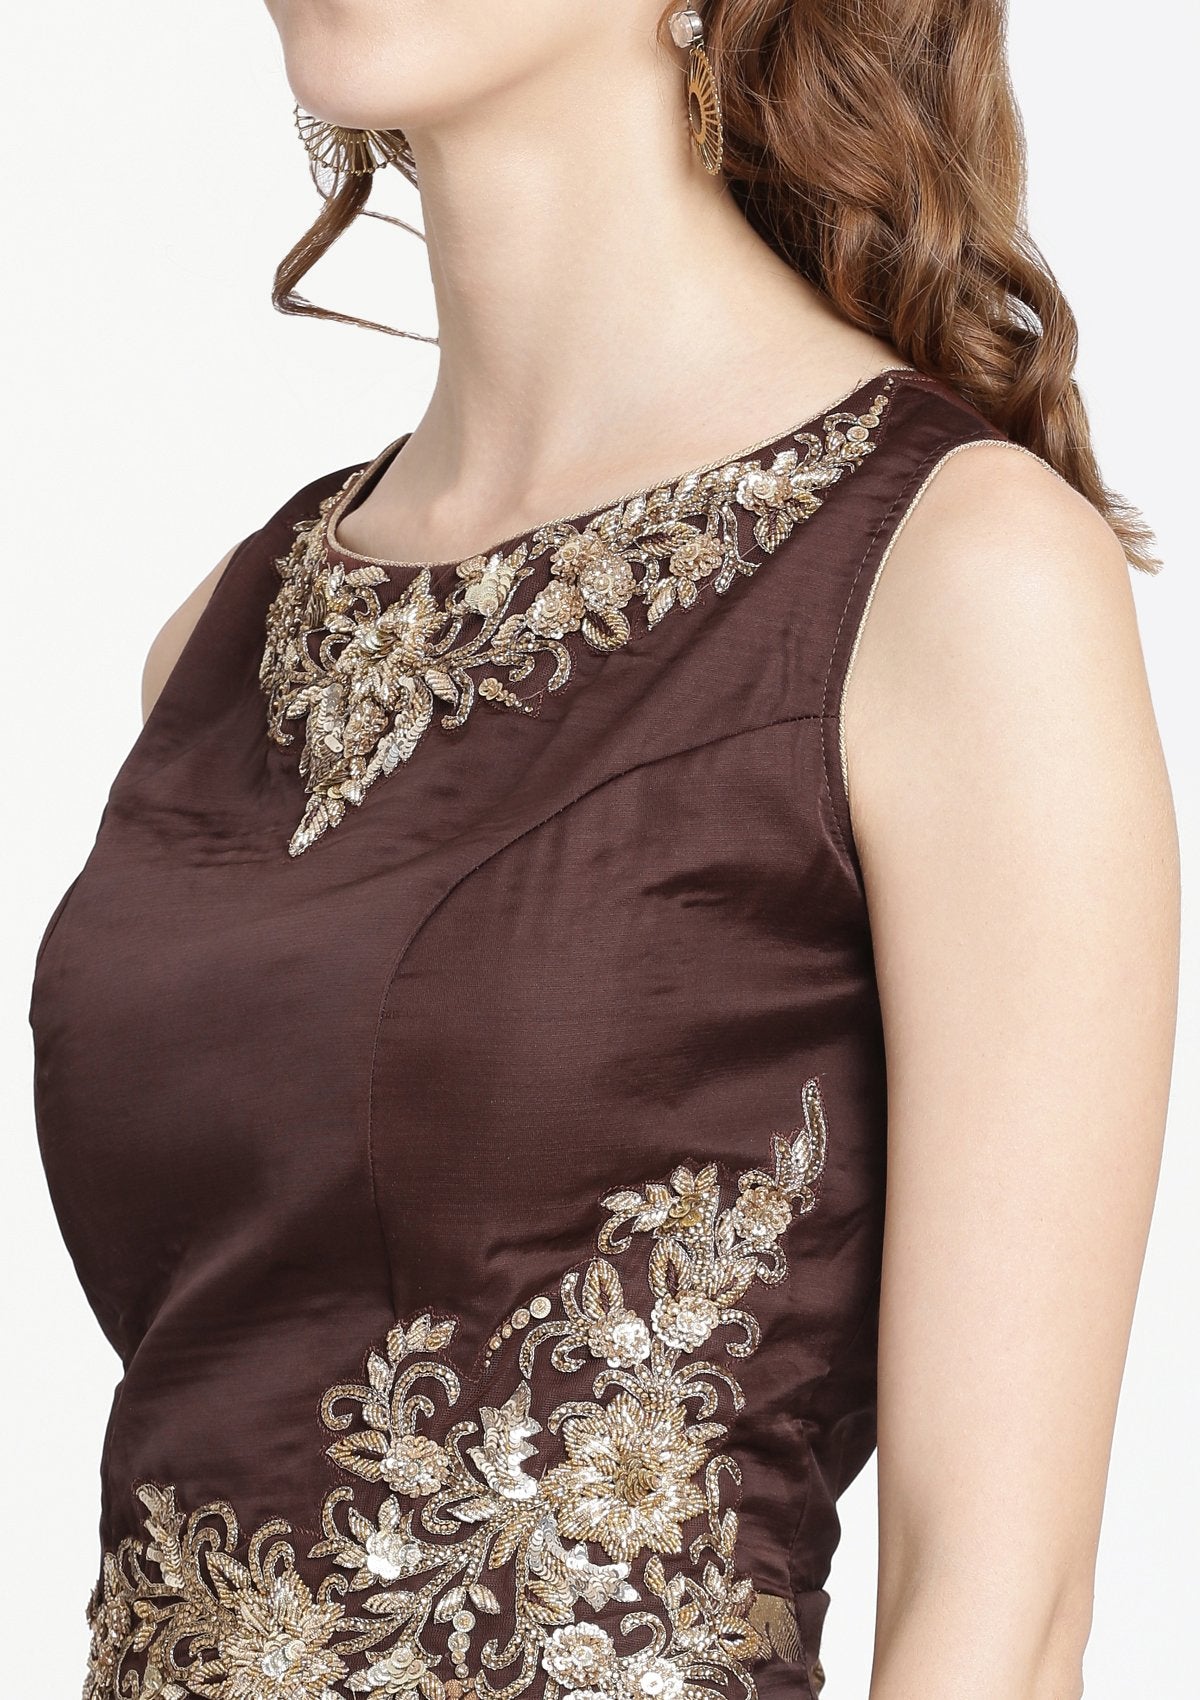 Brown Zariwork Silk Designer Gown-Koskii